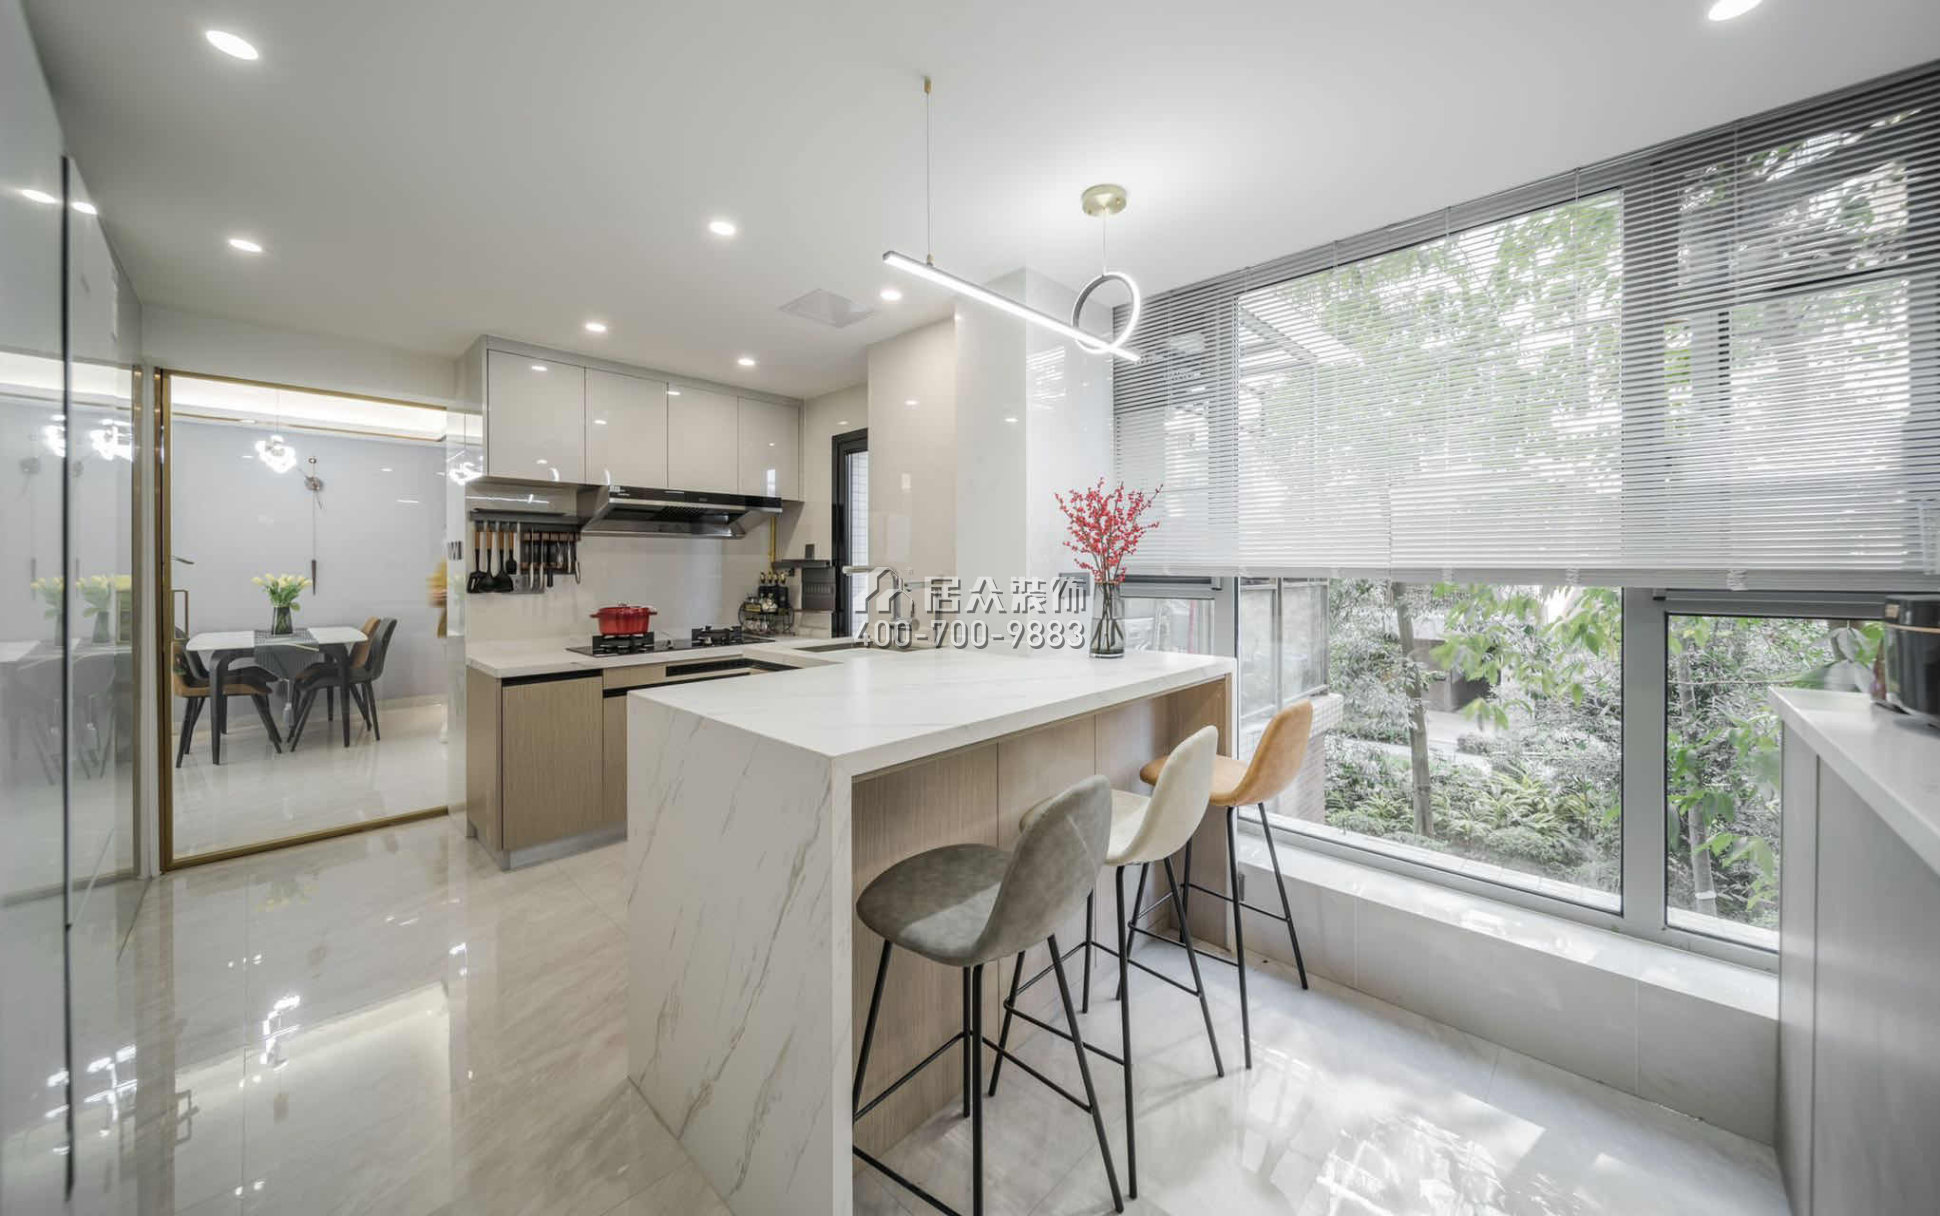 碧水龙庭130平方米现代简约风格平层户型厨房装修效果图